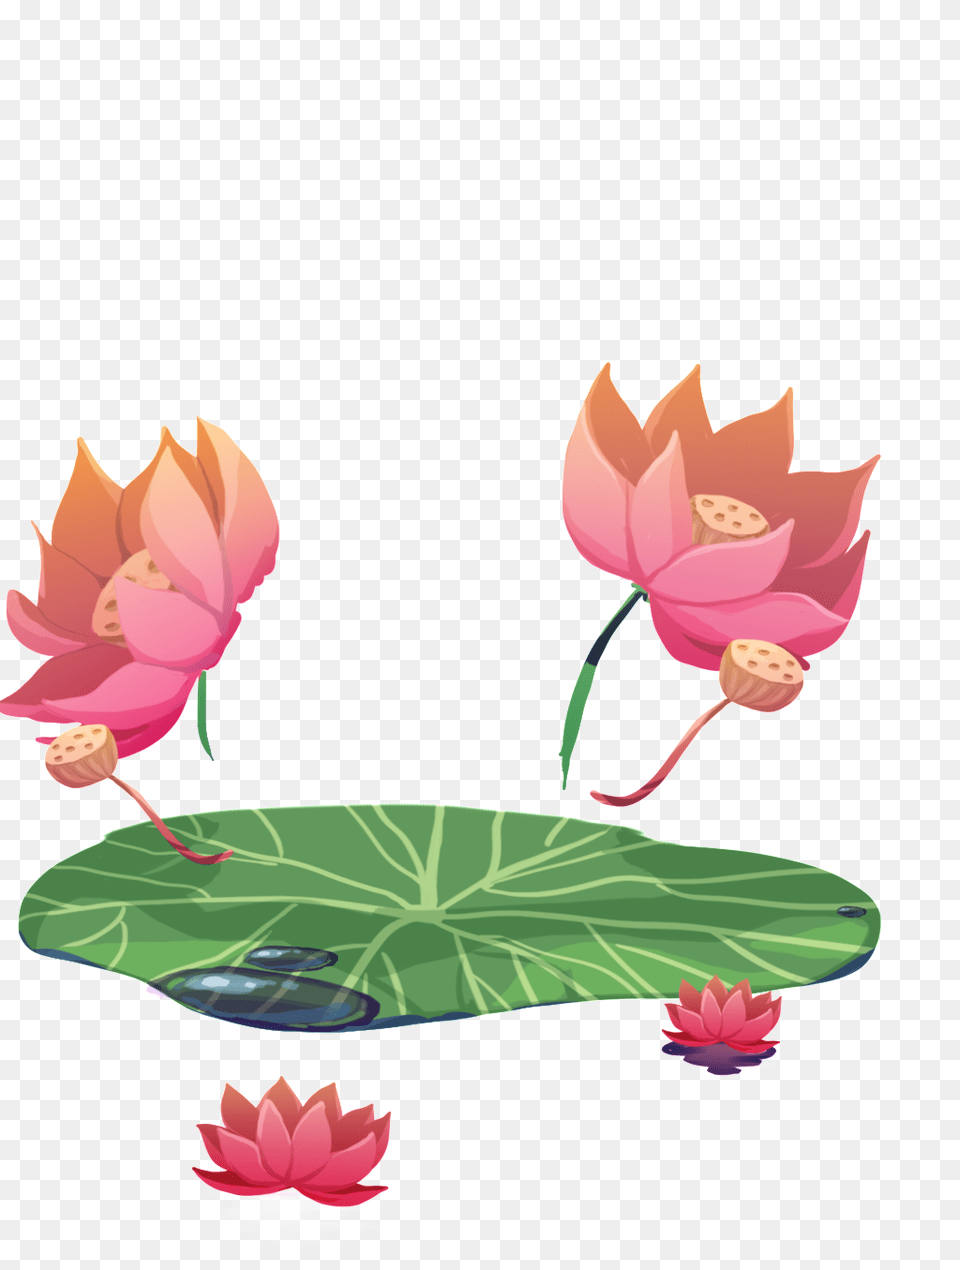 Summer Lotus Transparent Free Download Vector, Flower, Leaf, Plant, Rose Png Image